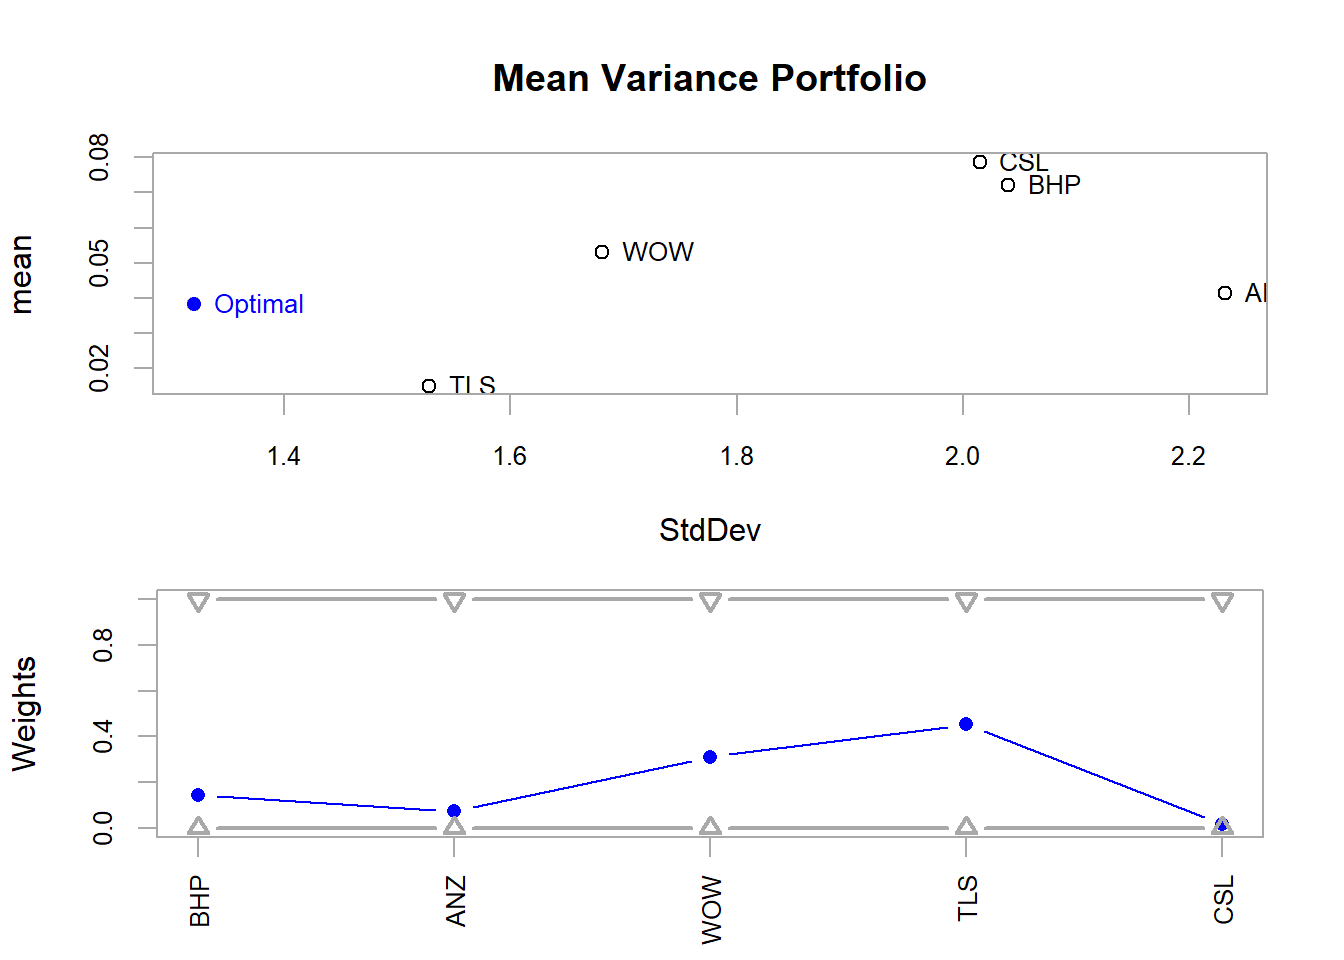 Mean Variance Portfolio Risk/Return